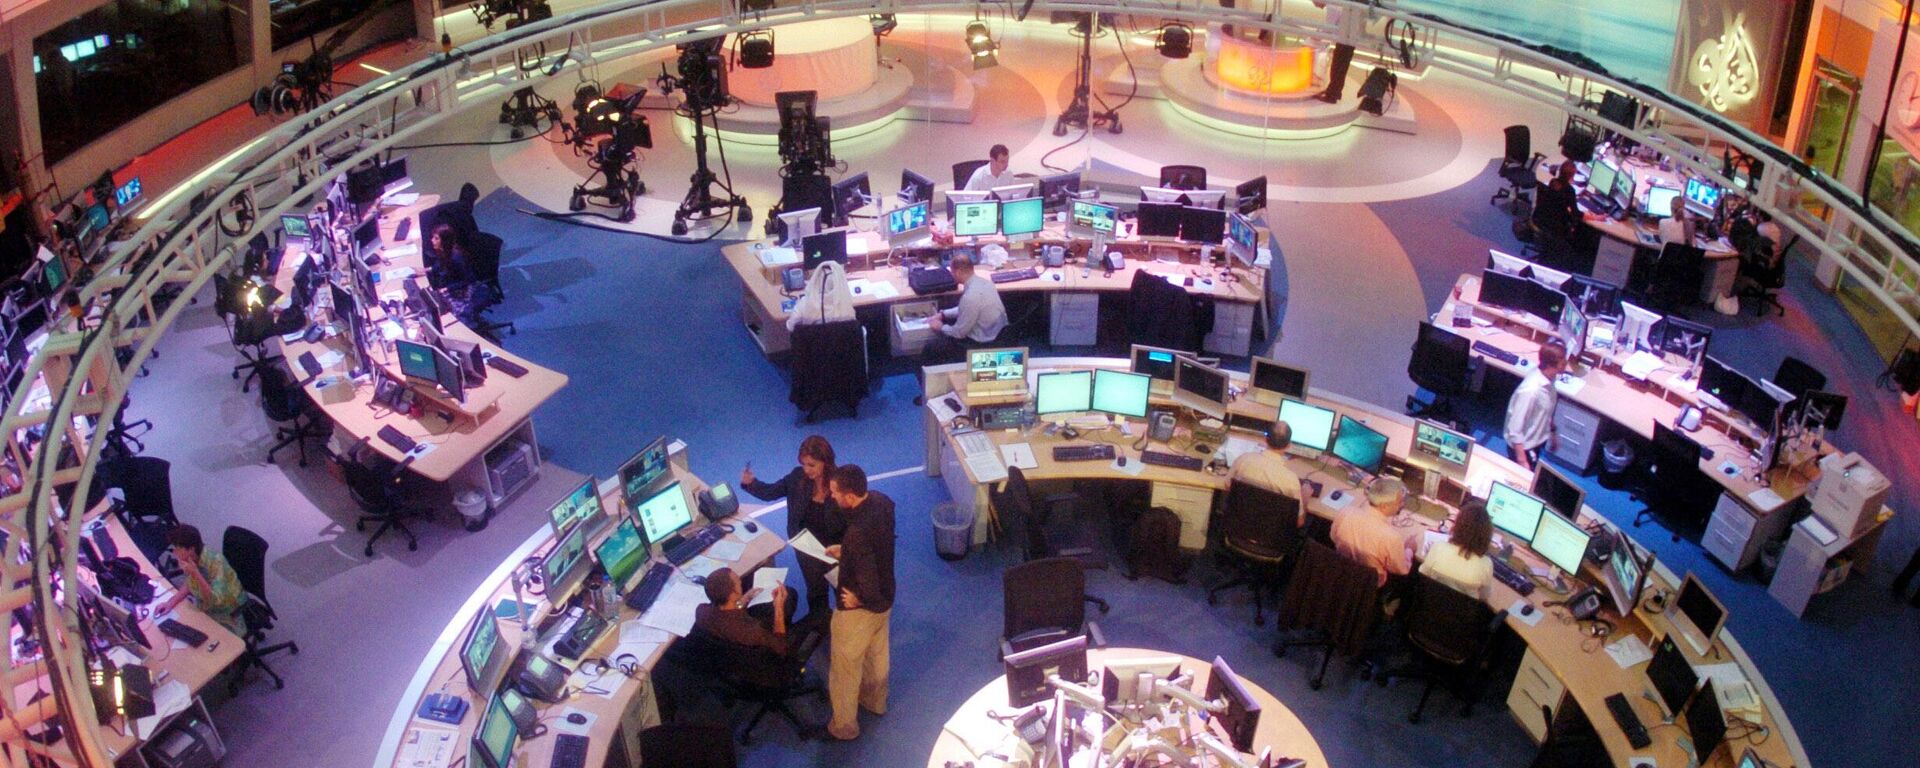 کارکنان انگلیسی الجزیره برای پخش در اتاق خبر در دوحه، قطر، این سه شنبه، 14 نوامبر 2006 آماده می شوند.  شرکت پخش قطر 